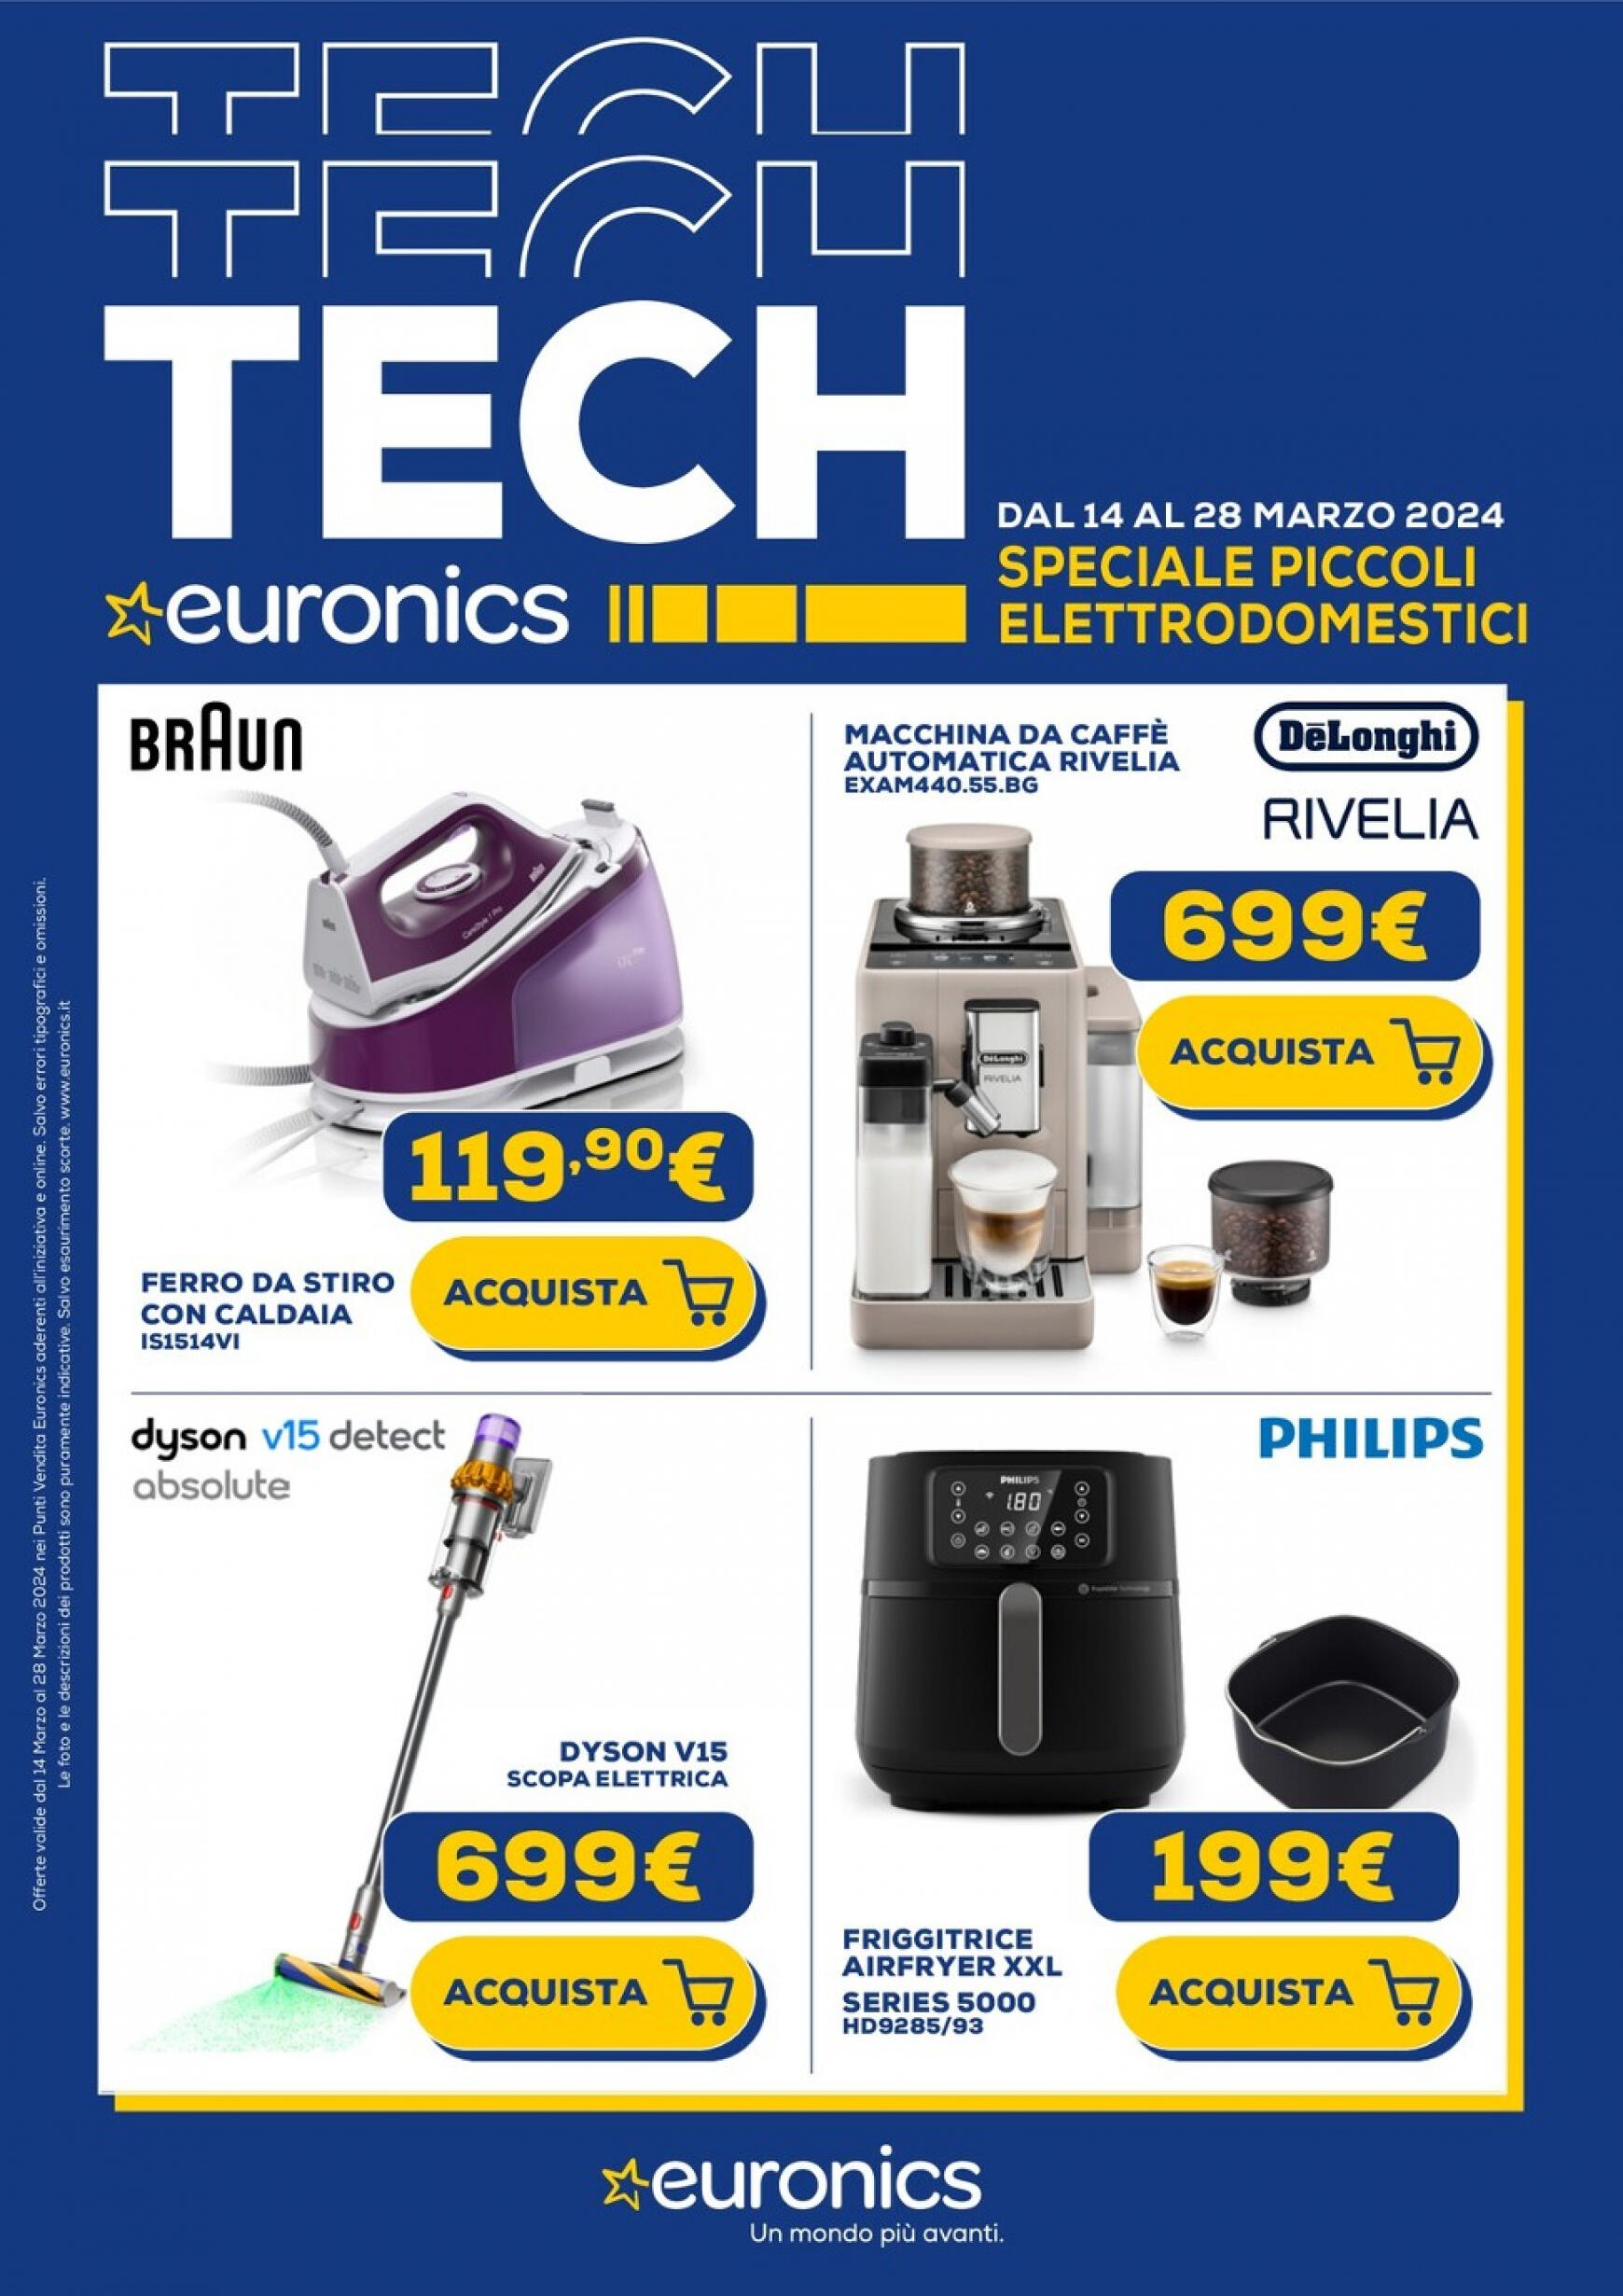 euronics - Euronics - Speciale Piccoli Elettrodomestici valido da 14.03.2024